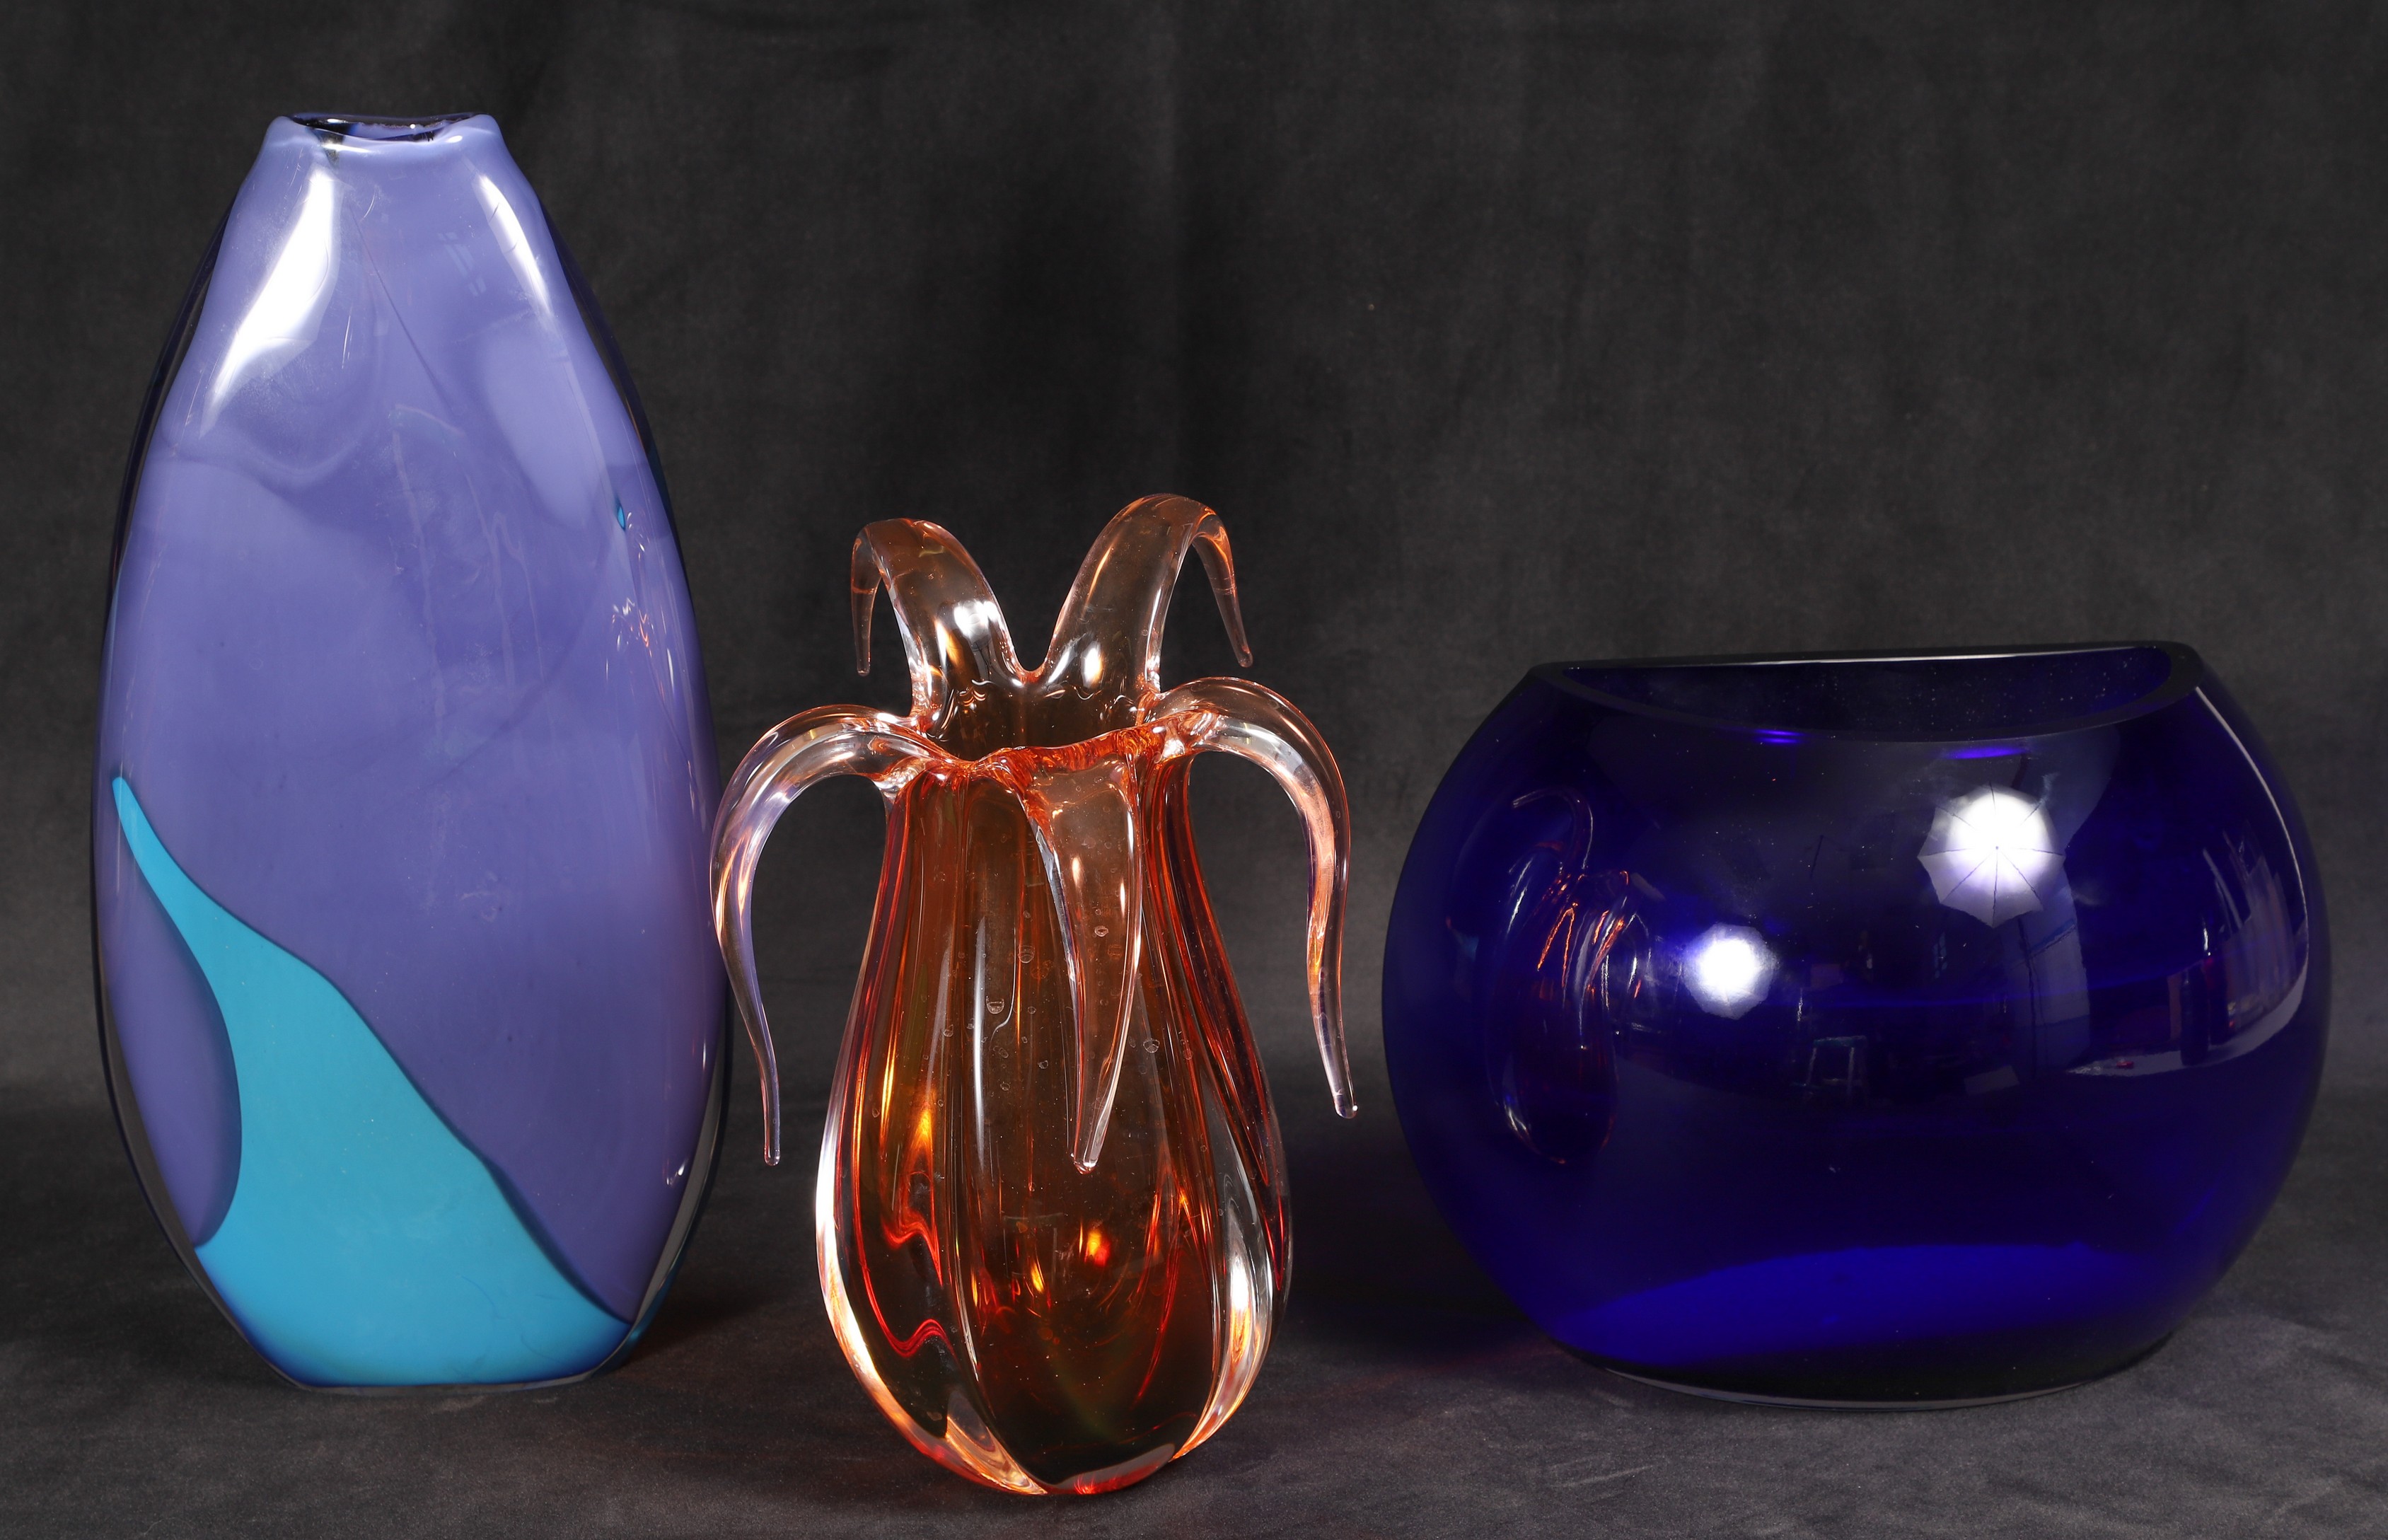  3 Art glass vases c o blue ovoid 2e0ba2